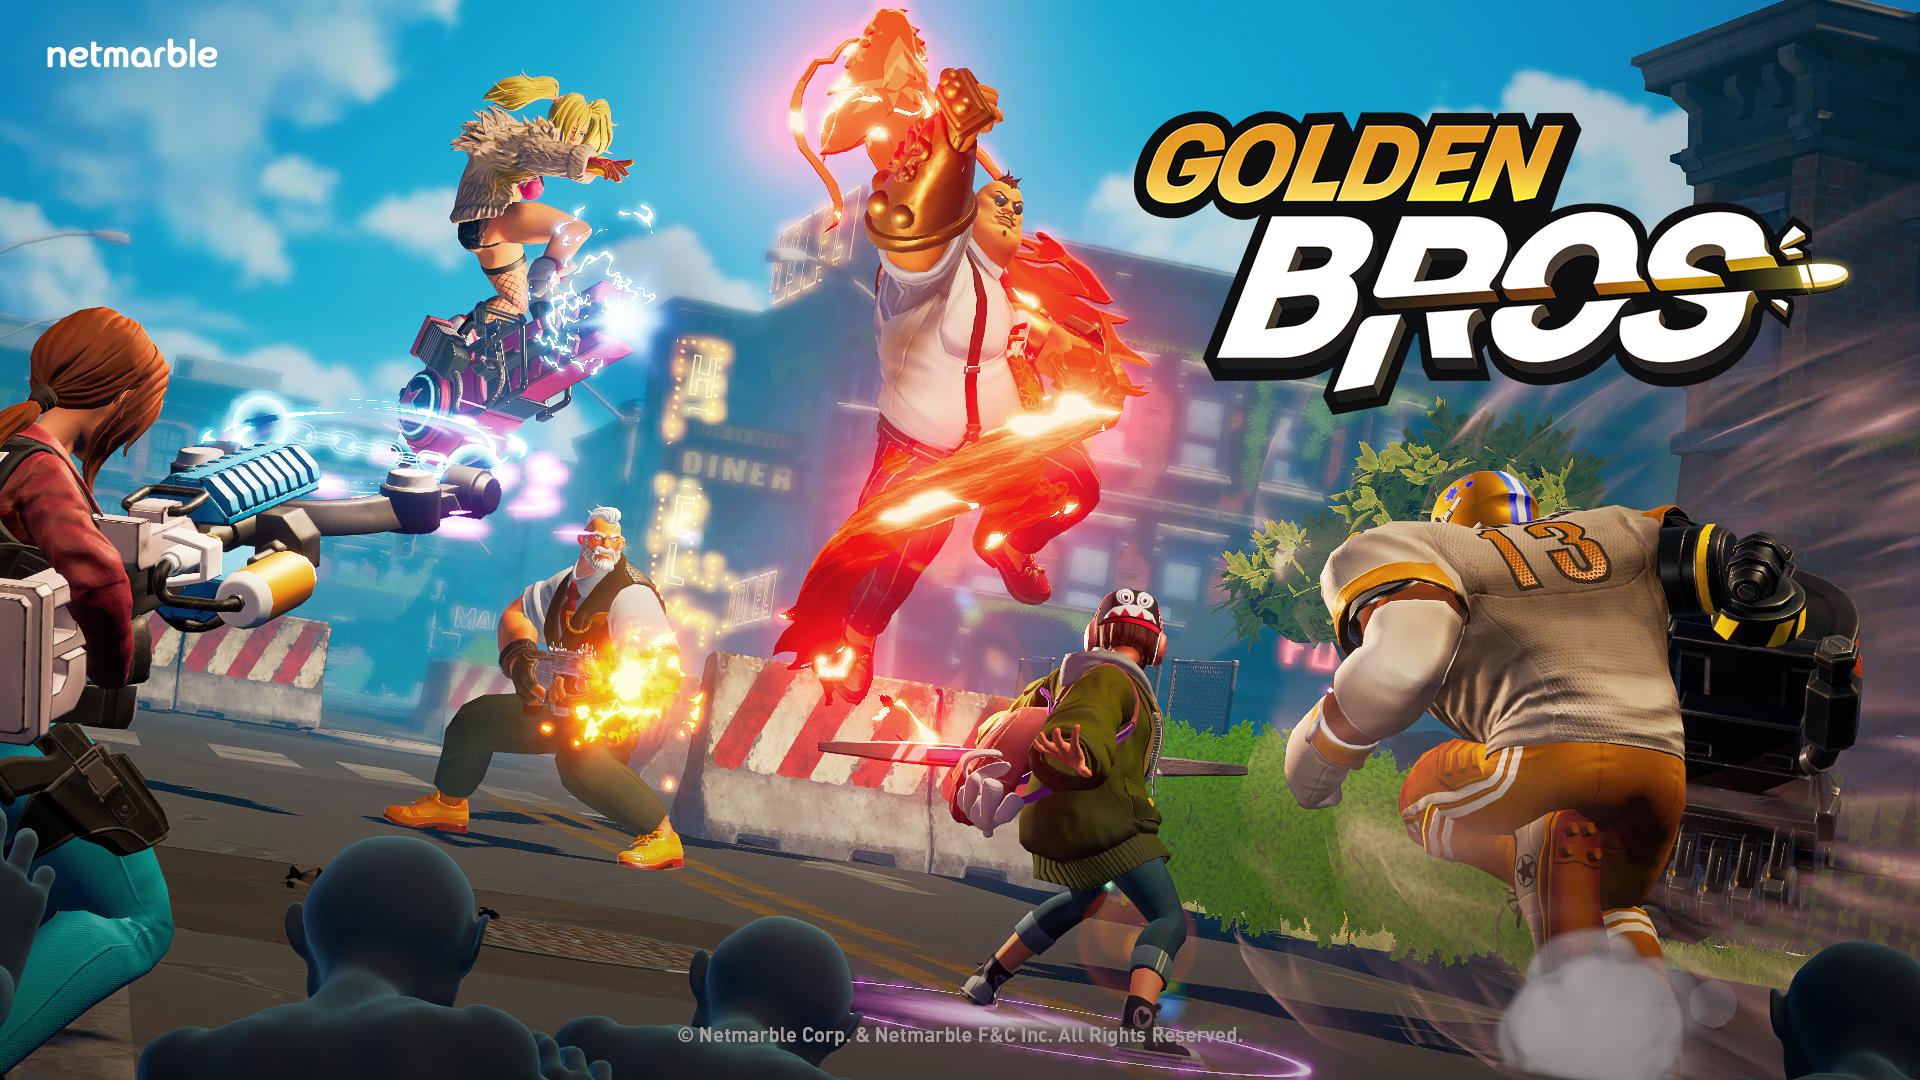 網石公開全新休閒射擊遊戲《Golden Bros》官方網站